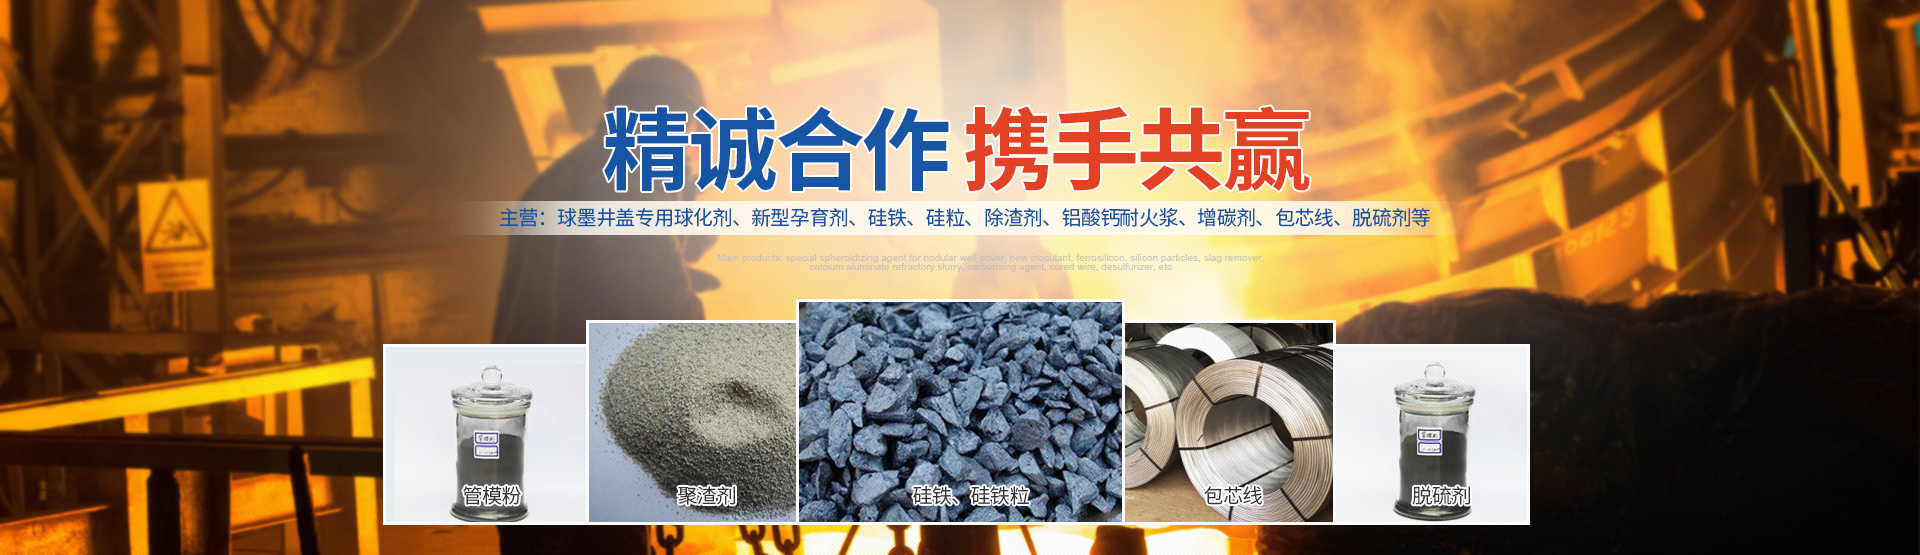 安阳县U乐国际铸造材料科技有限公司